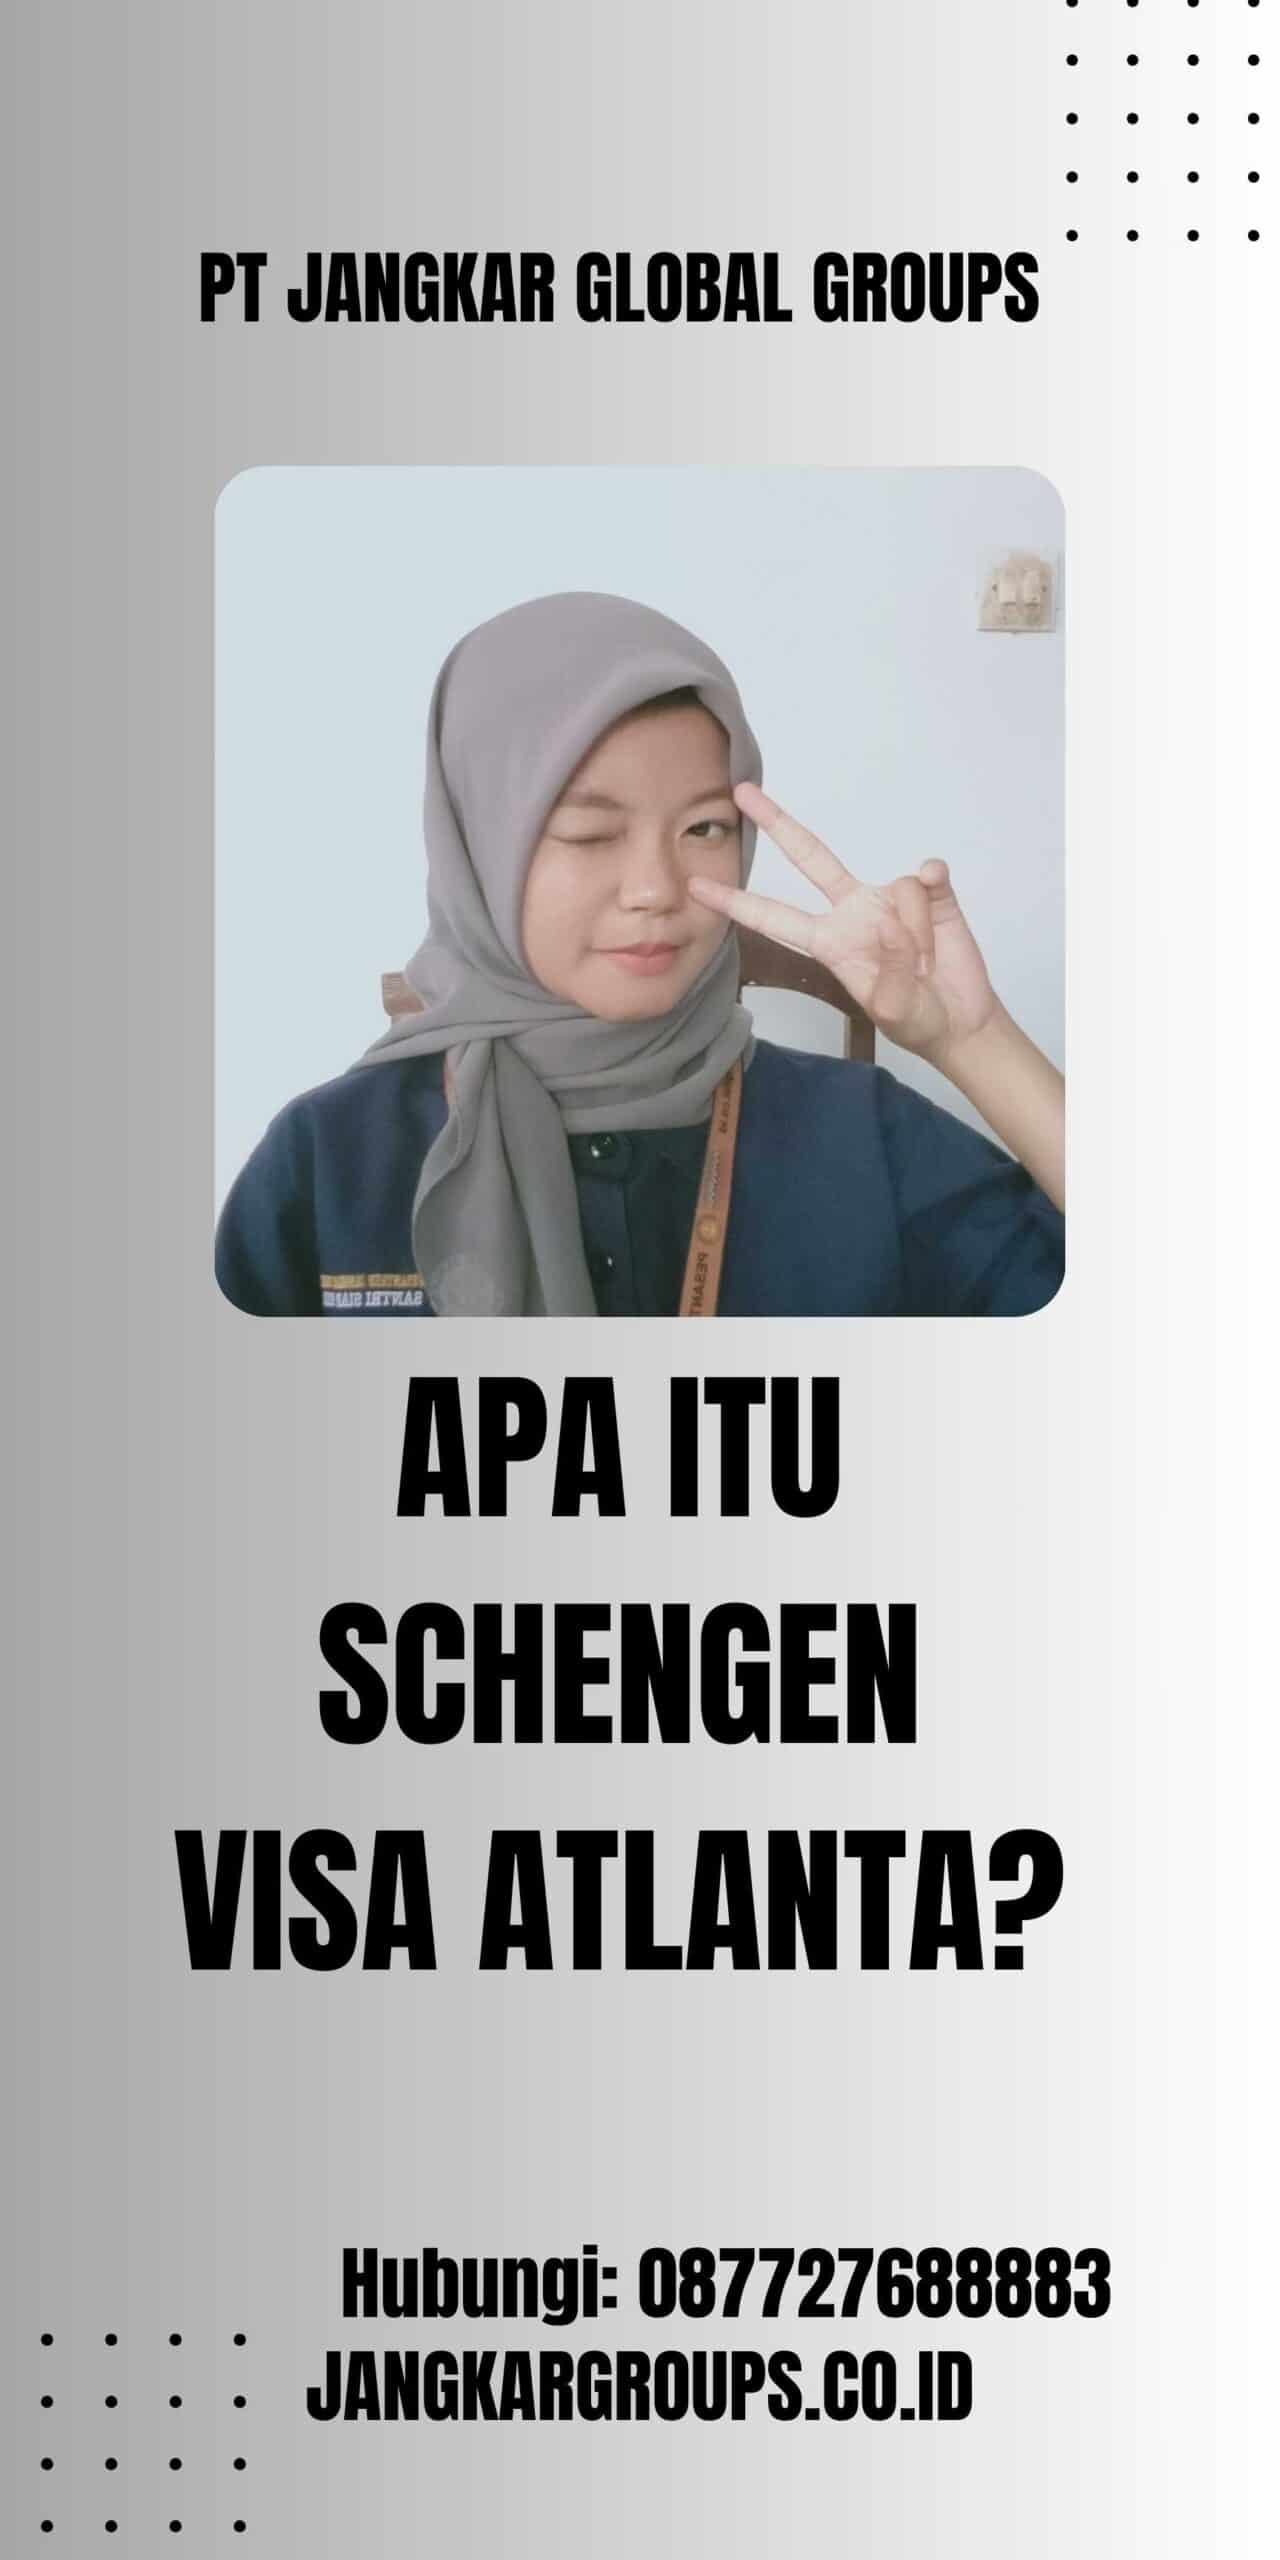 Apa itu Schengen Visa Atlanta